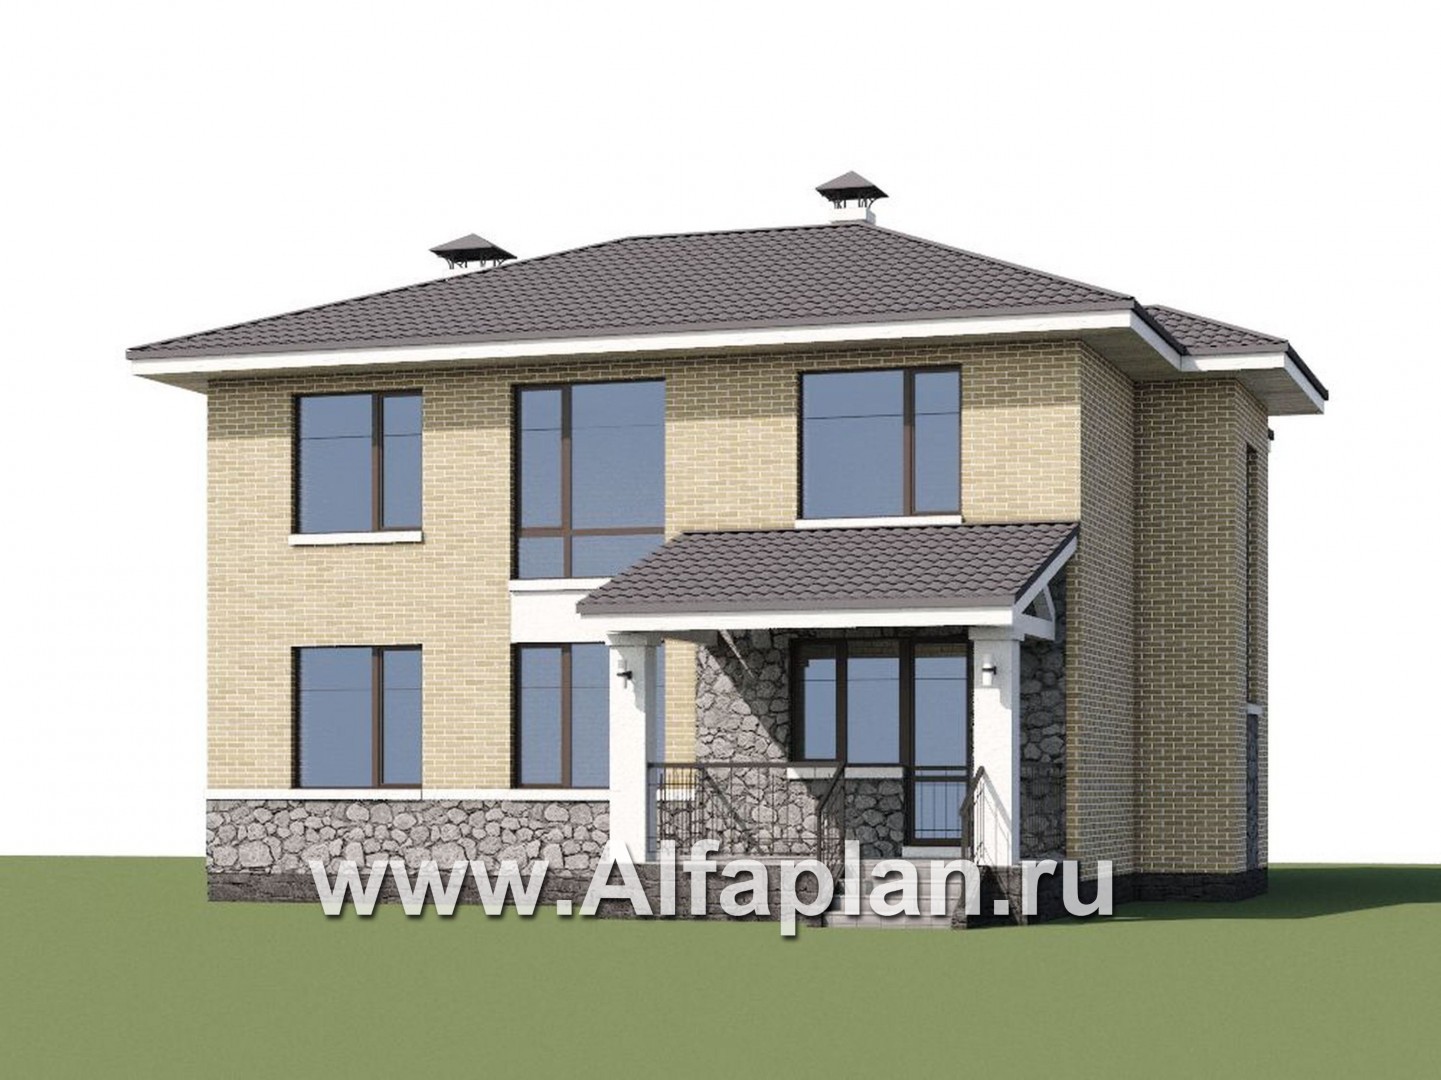 Проекты домов Альфаплан - «Благополучие» - классический коттедж с открытой планировкой - дополнительное изображение №1